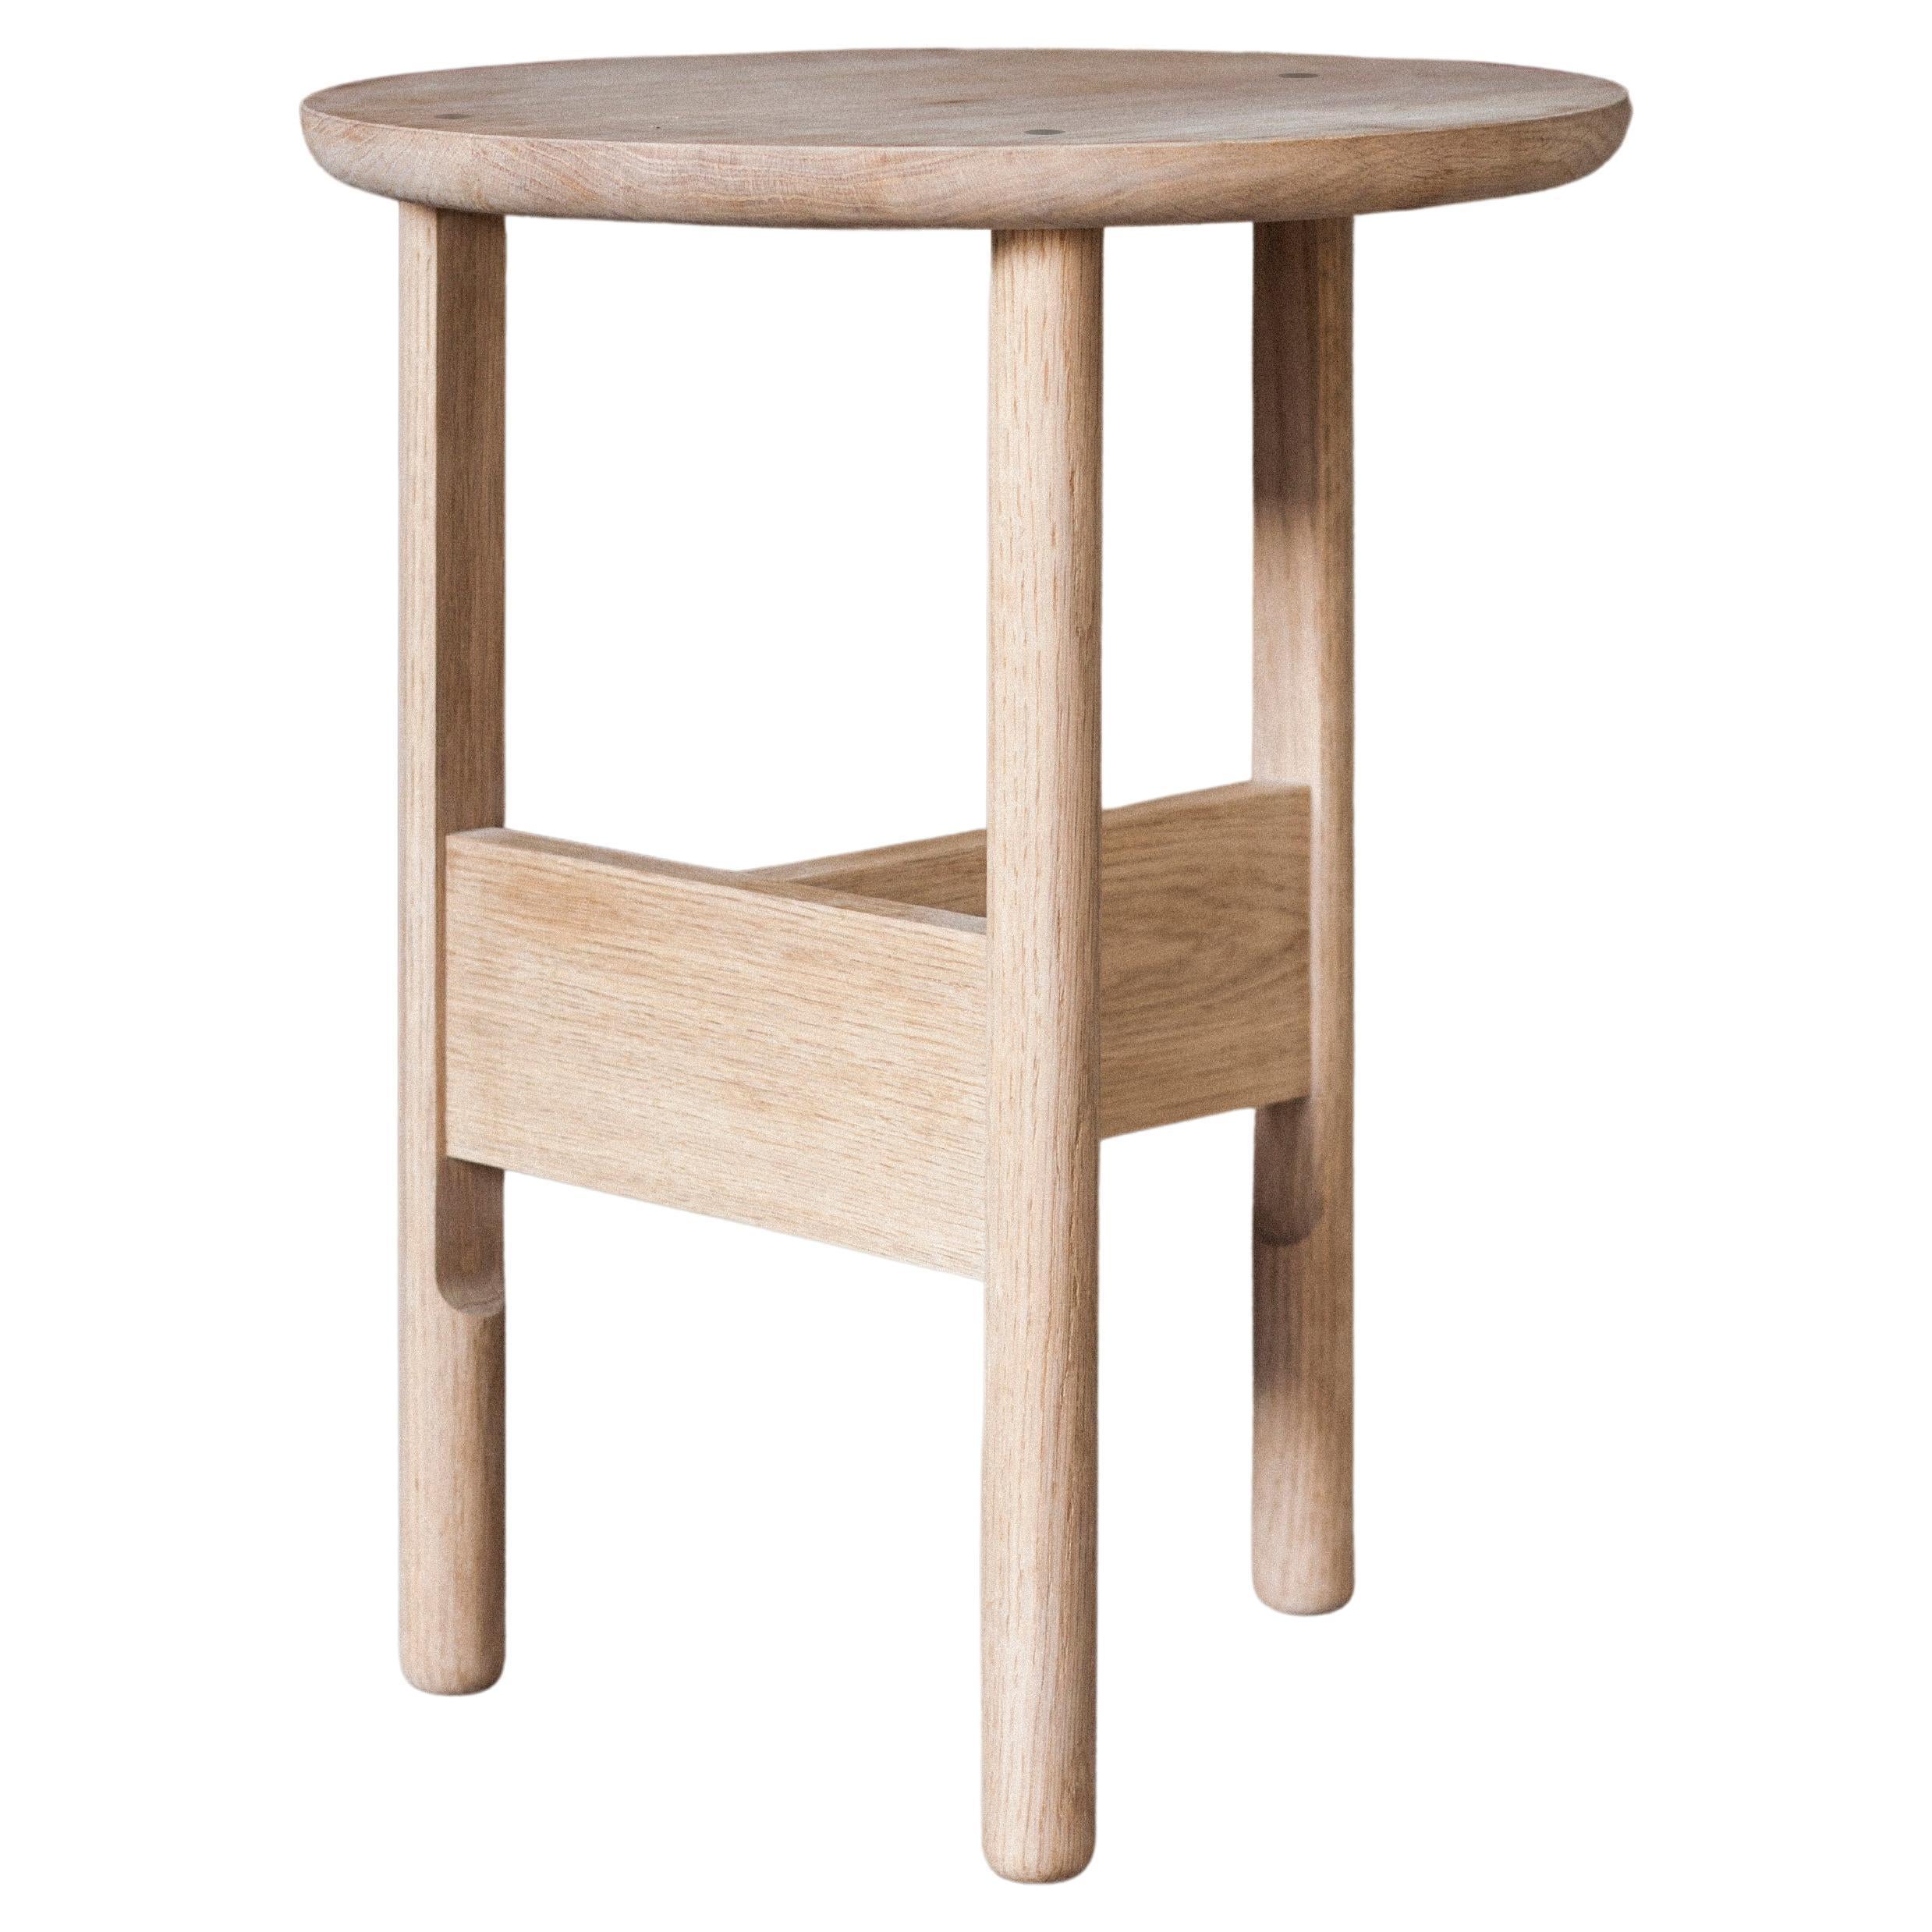 Handmade Hanne Side Table, Ø45cm - Oak - by BACD studio For Sale